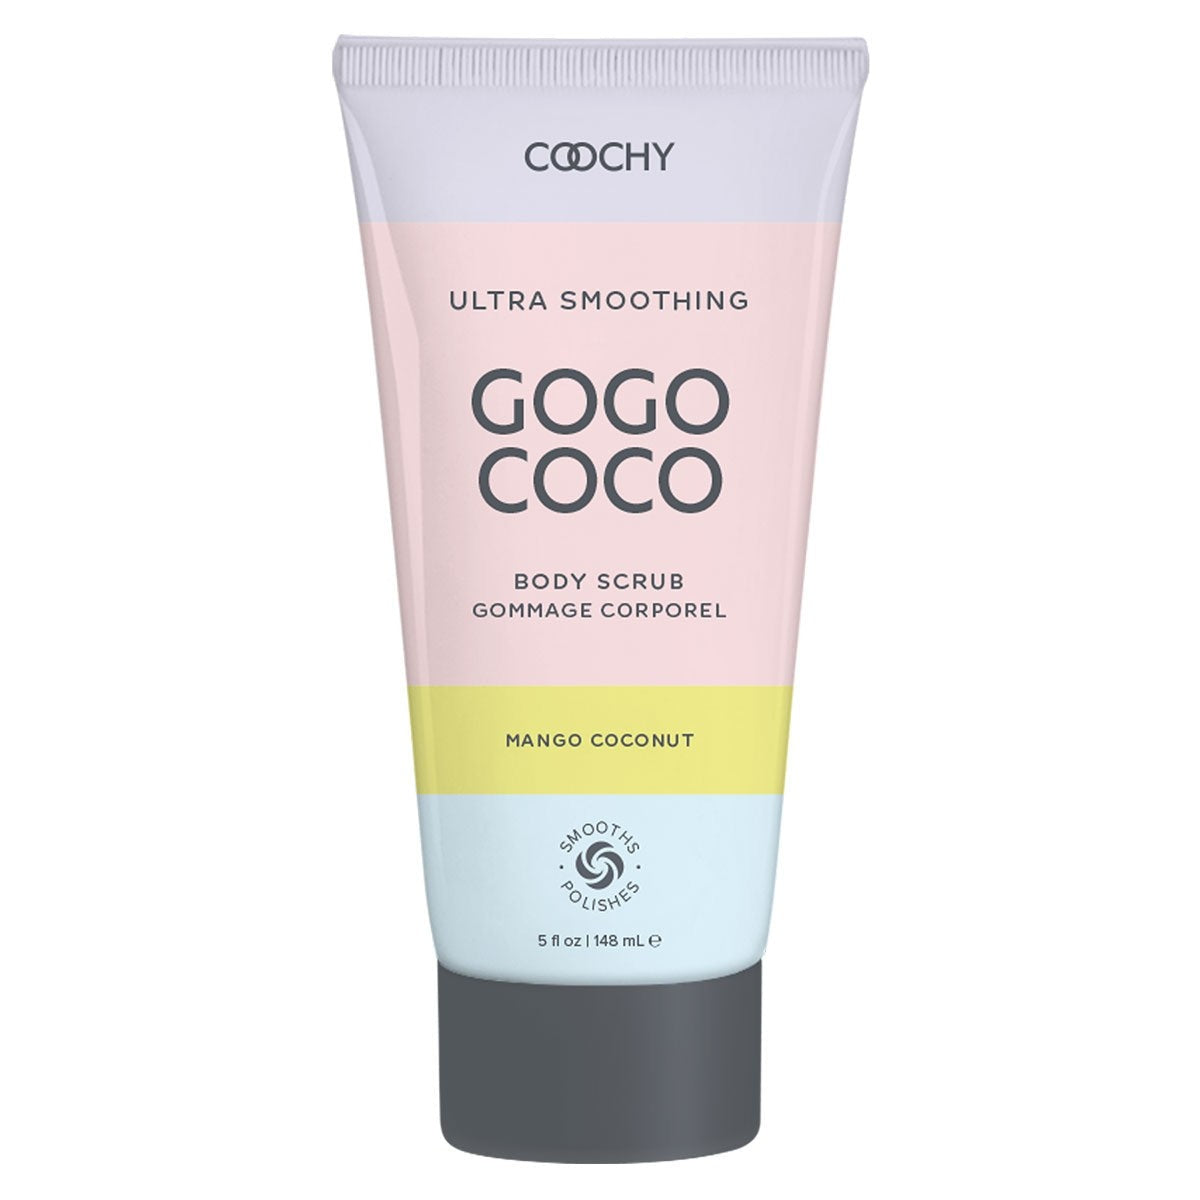 Coochy Ultra Gogo Coco Body Scrub 5oz - Mango Coconut Intimates Adult Boutique